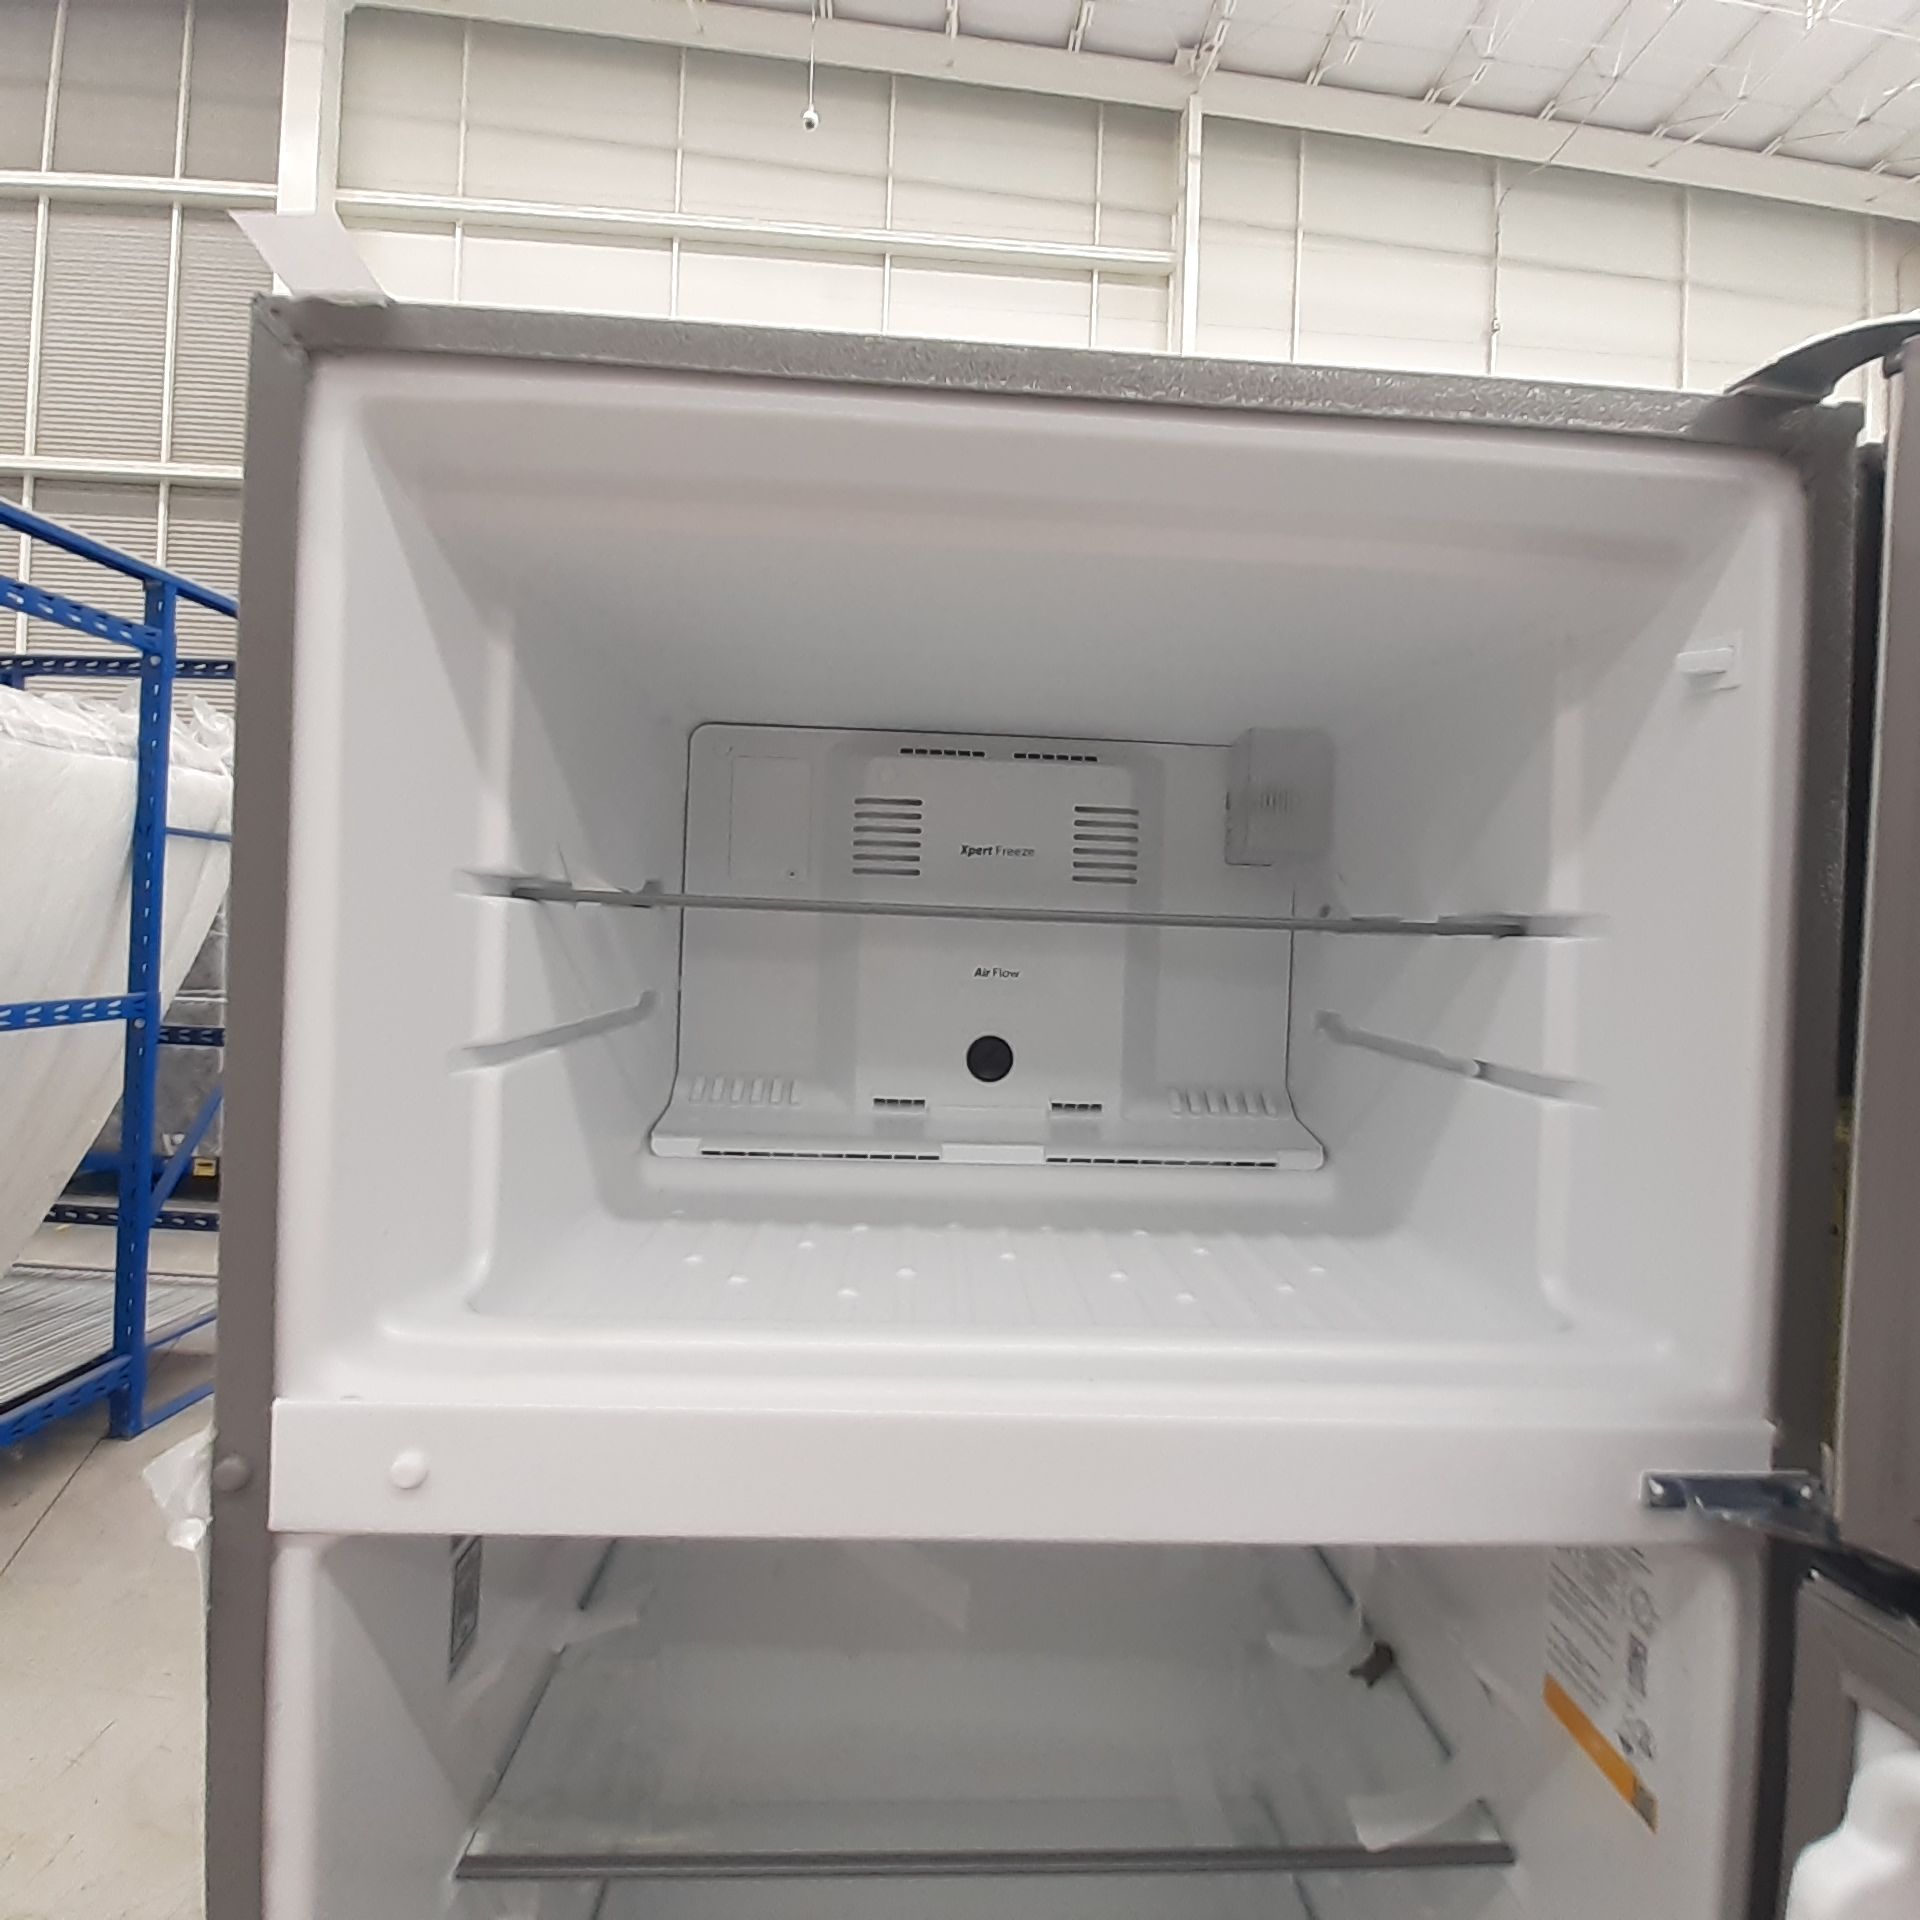 Lote De 3 Refrigeradores: 1 Refrigerador Marca Whirlpool, 1 Refrigerador Marca Mabe, 1 Refrigerador - Image 10 of 22